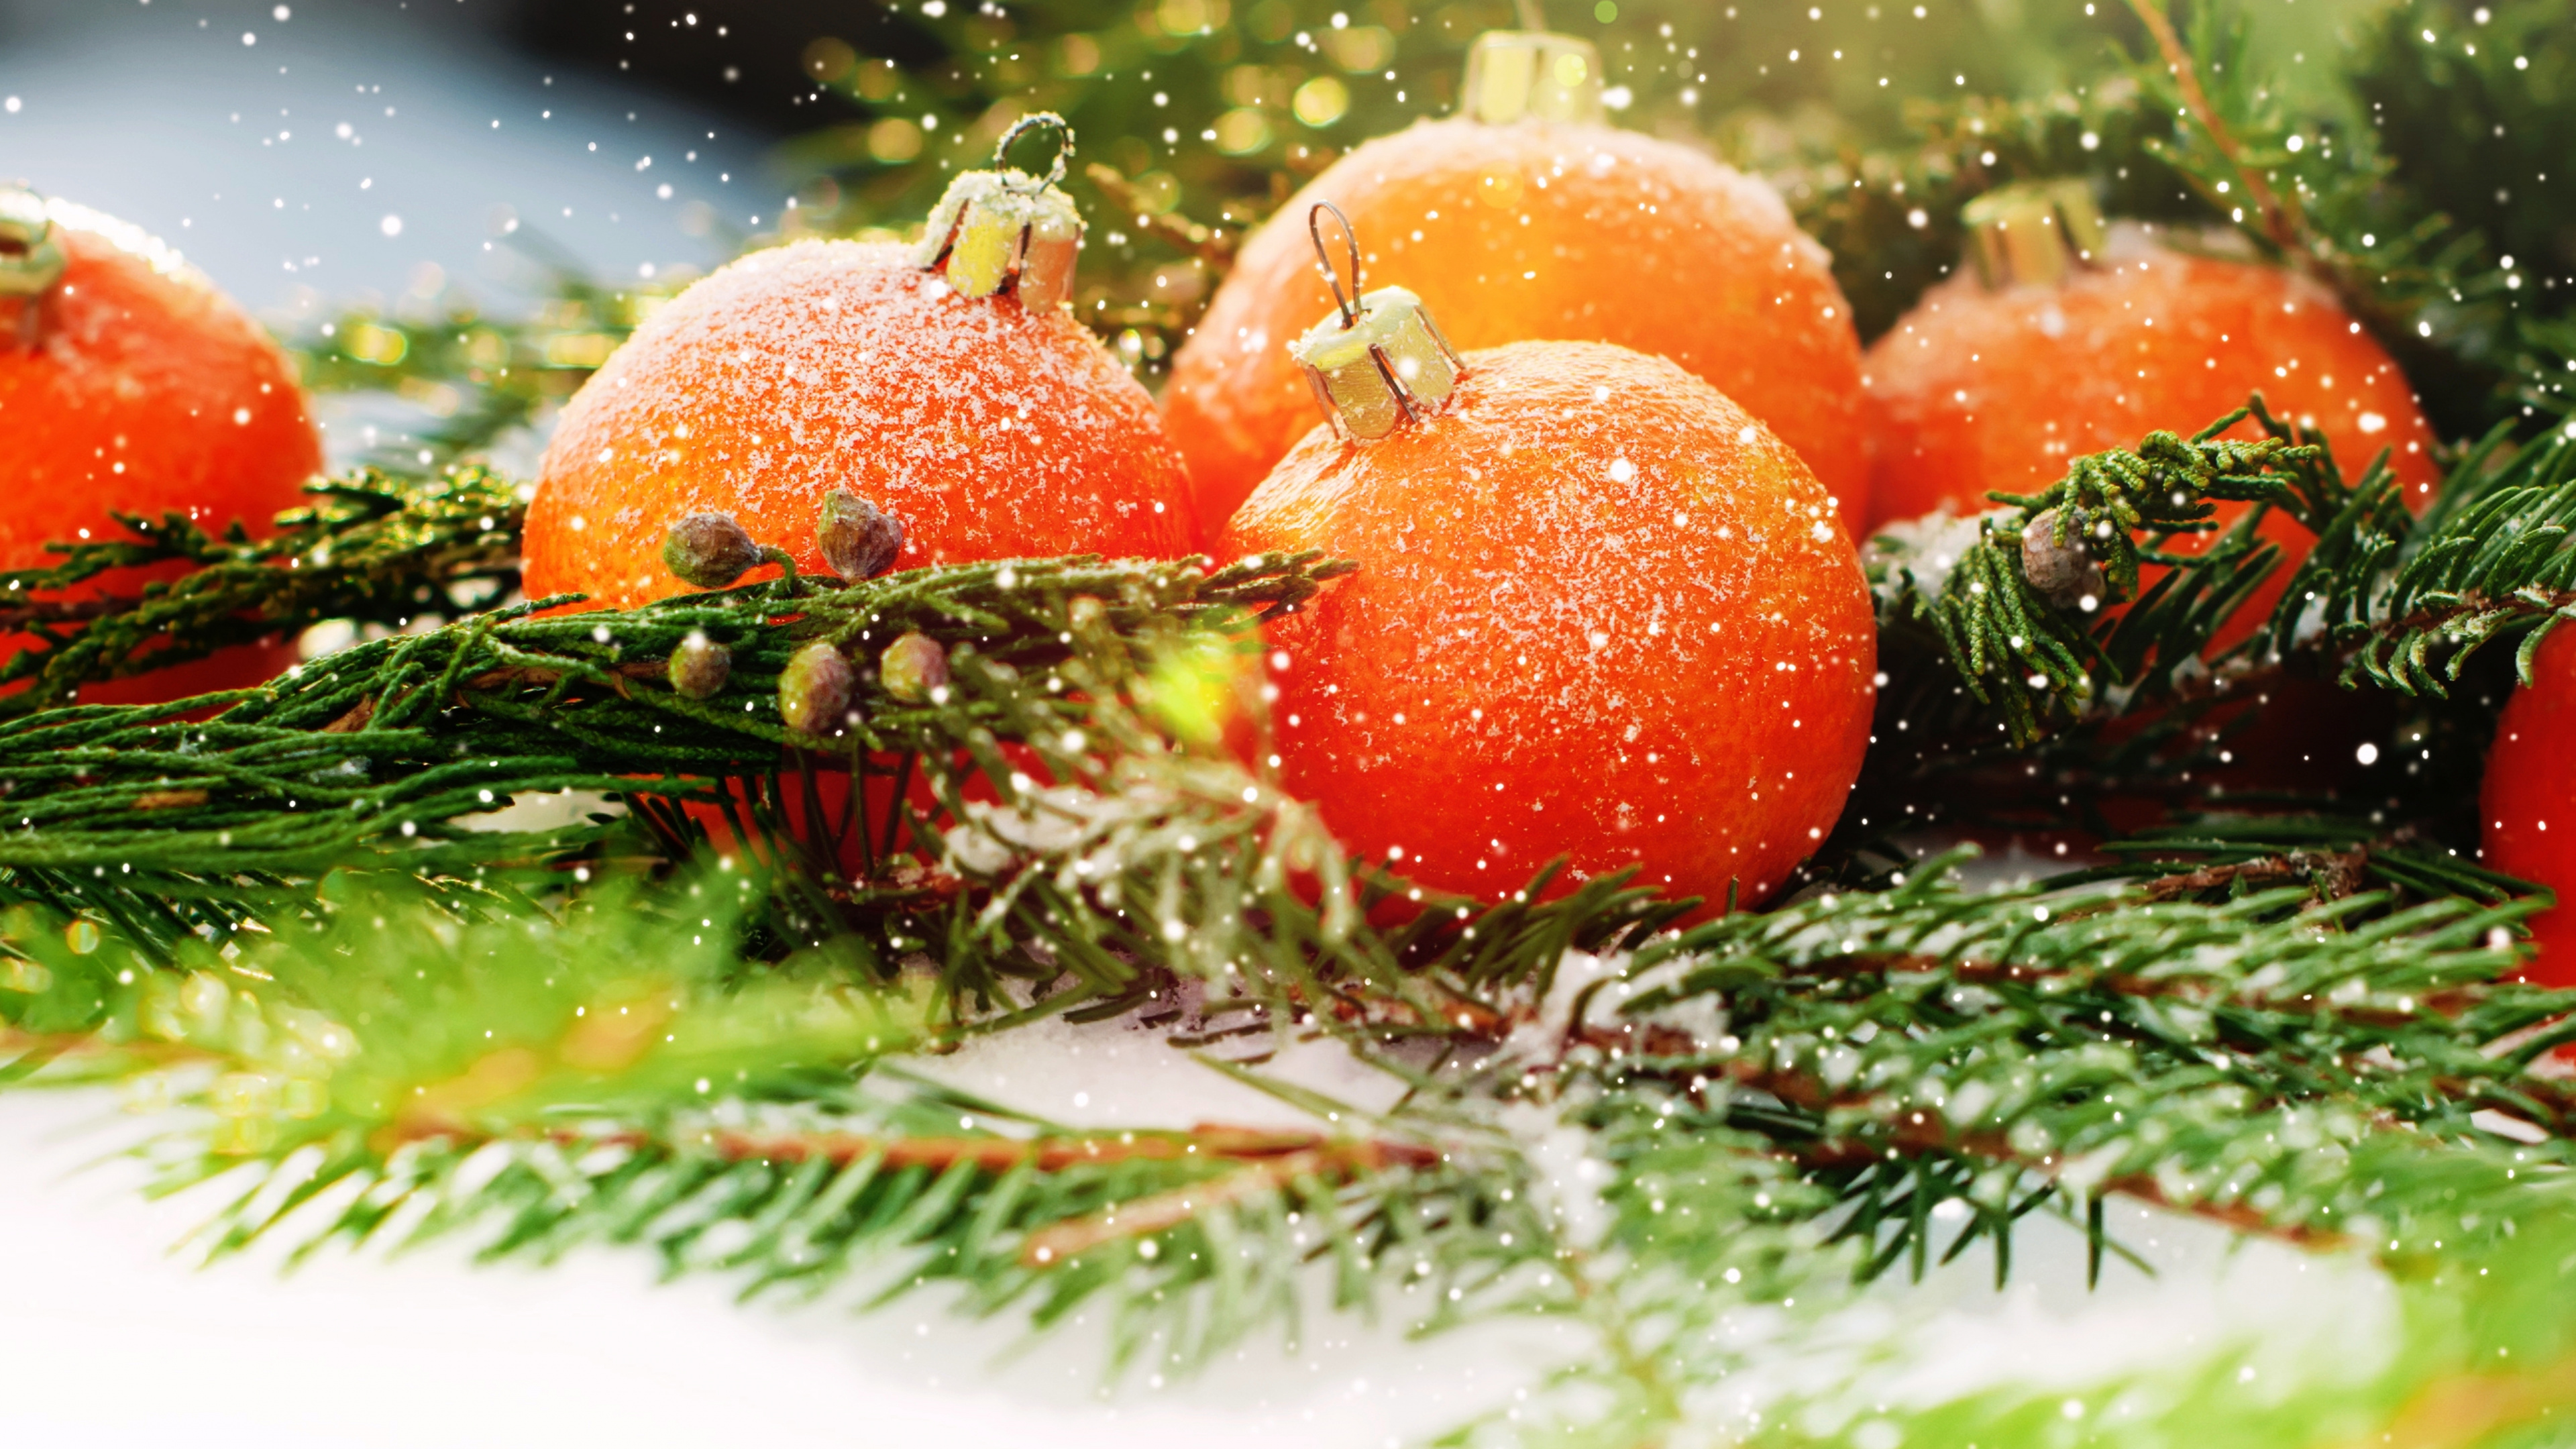 Le Jour De Noël, Nouvelle Année, la Nourriture Végétarienne, Aliment, Fruits. Wallpaper in 3840x2160 Resolution